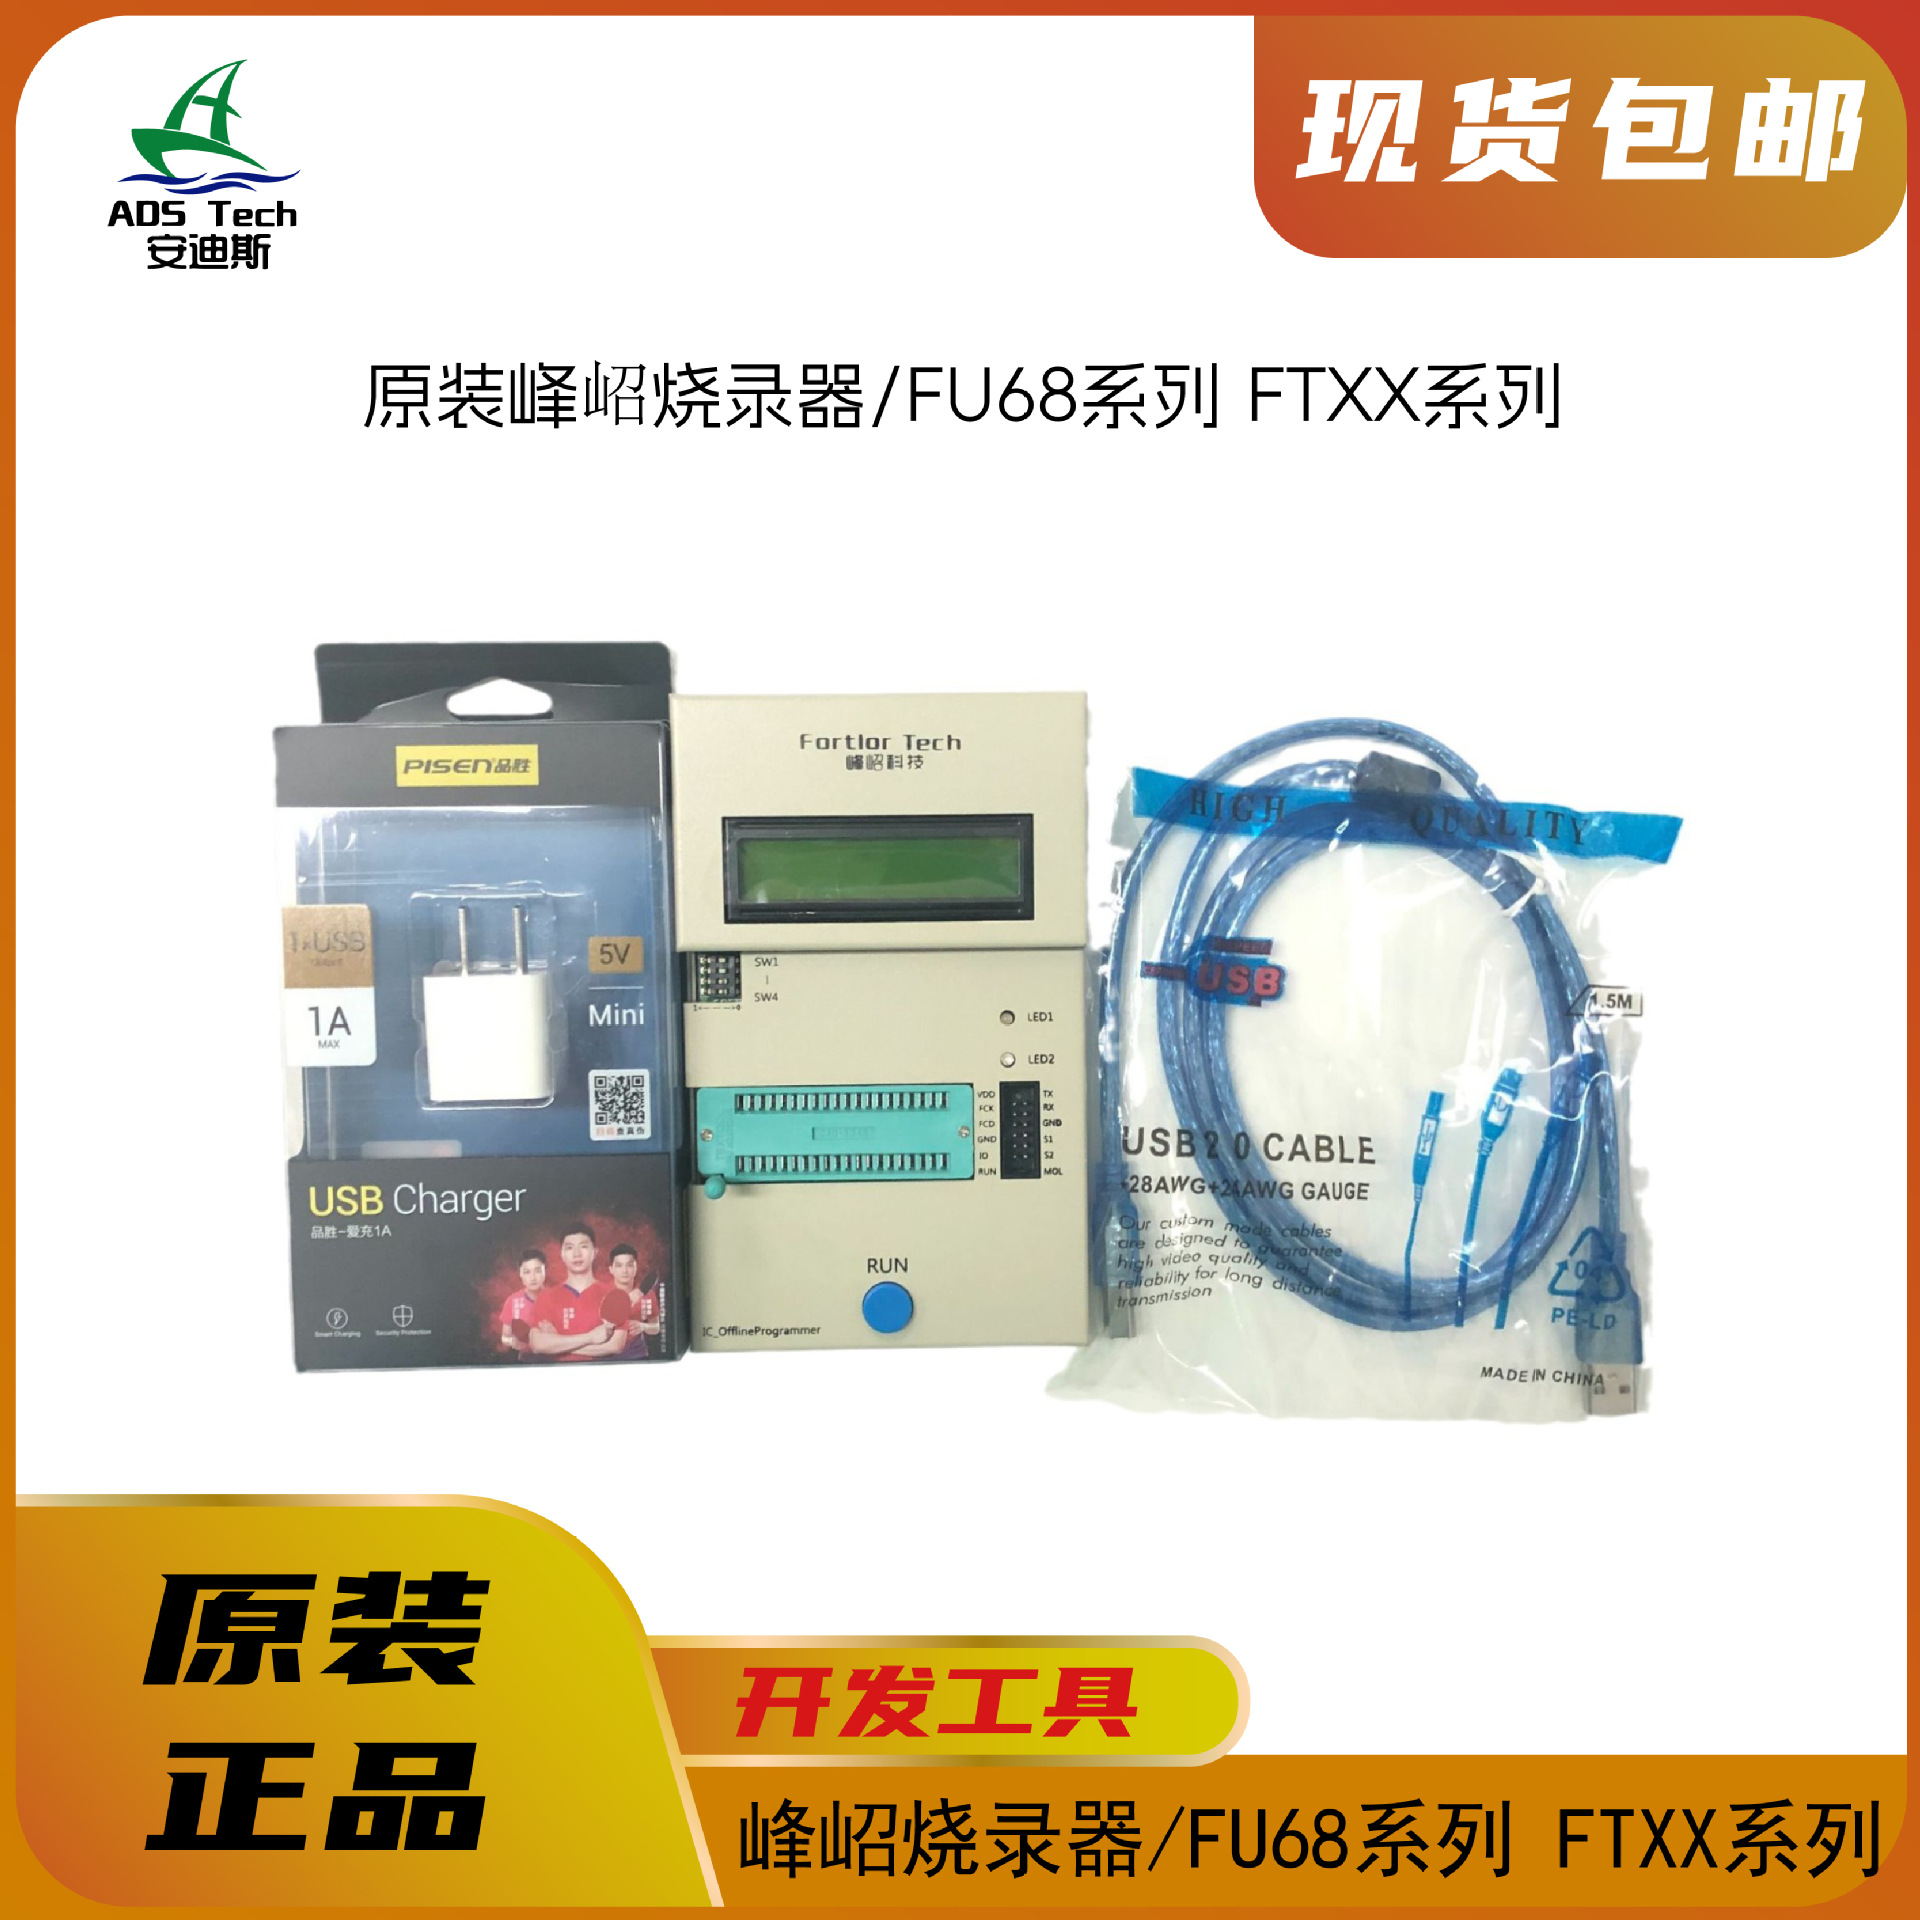 峰岹 烧录器FU68/FTXX系列 驱动IC编译开发/烧录工具